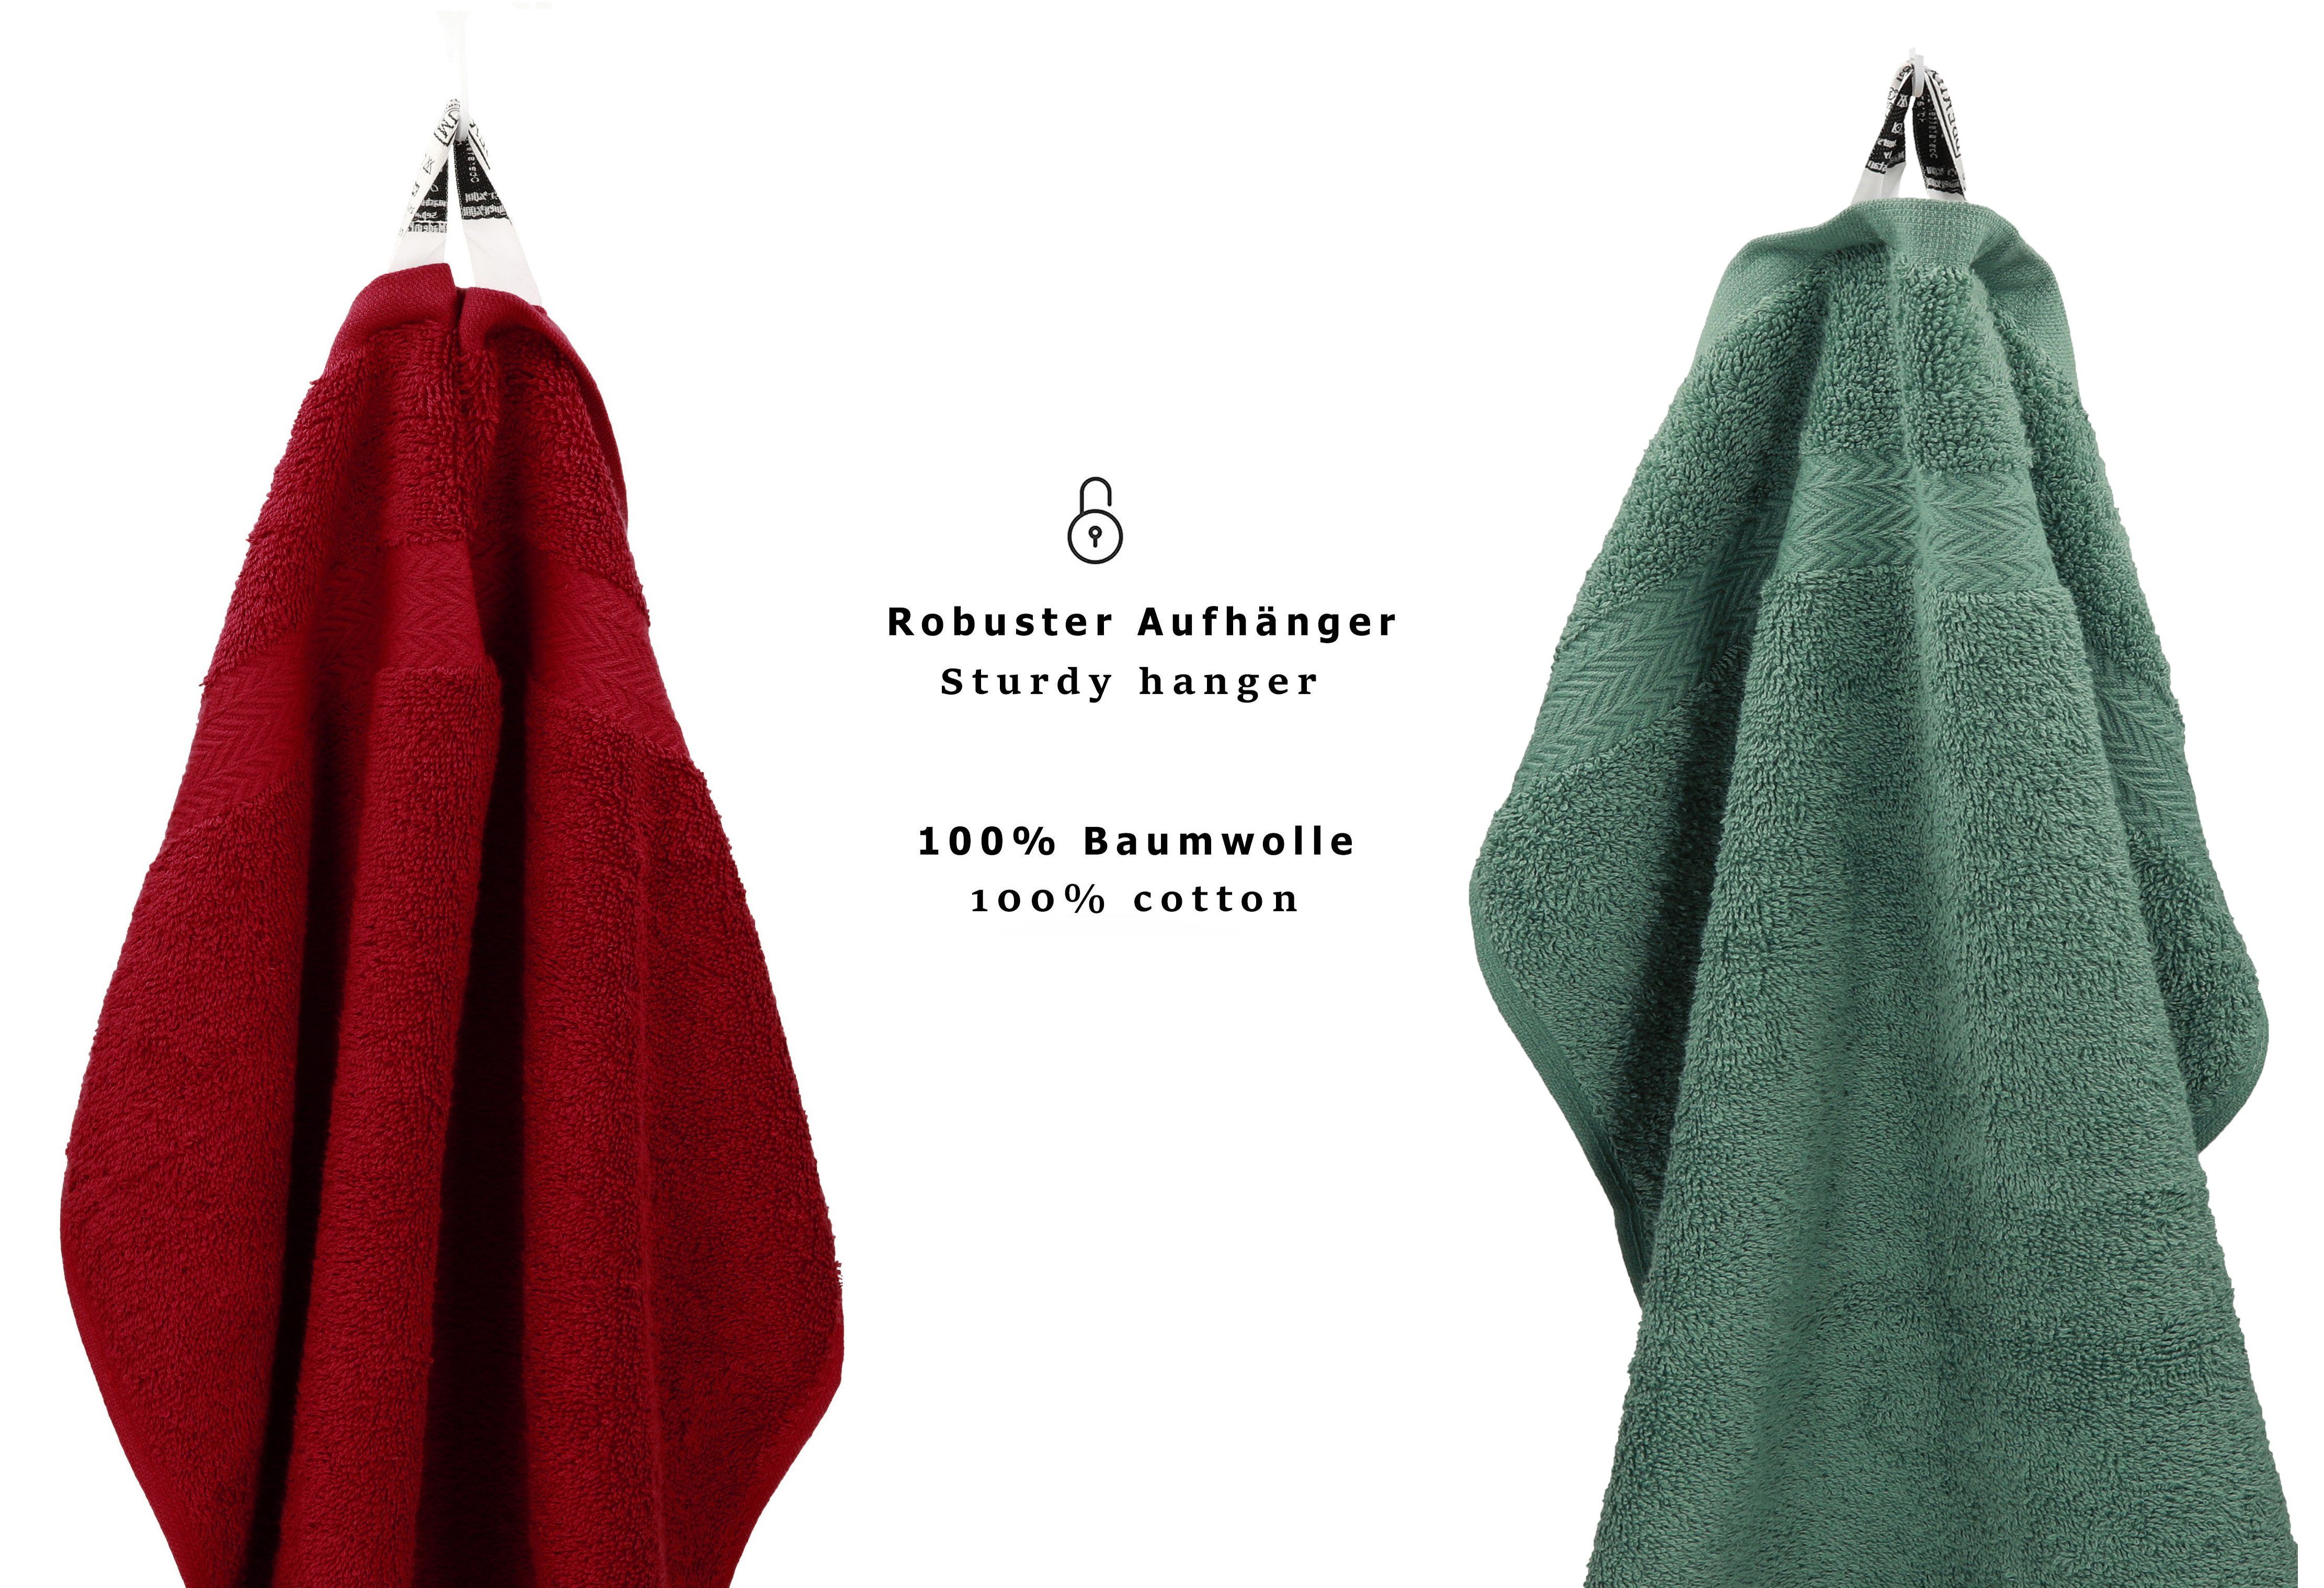 Set PREMIUM Handtuch Baumwolle, 100% Betz 12-tlg. rubinrot/tannengrün, Handtuch Set Farbe (12-tlg)